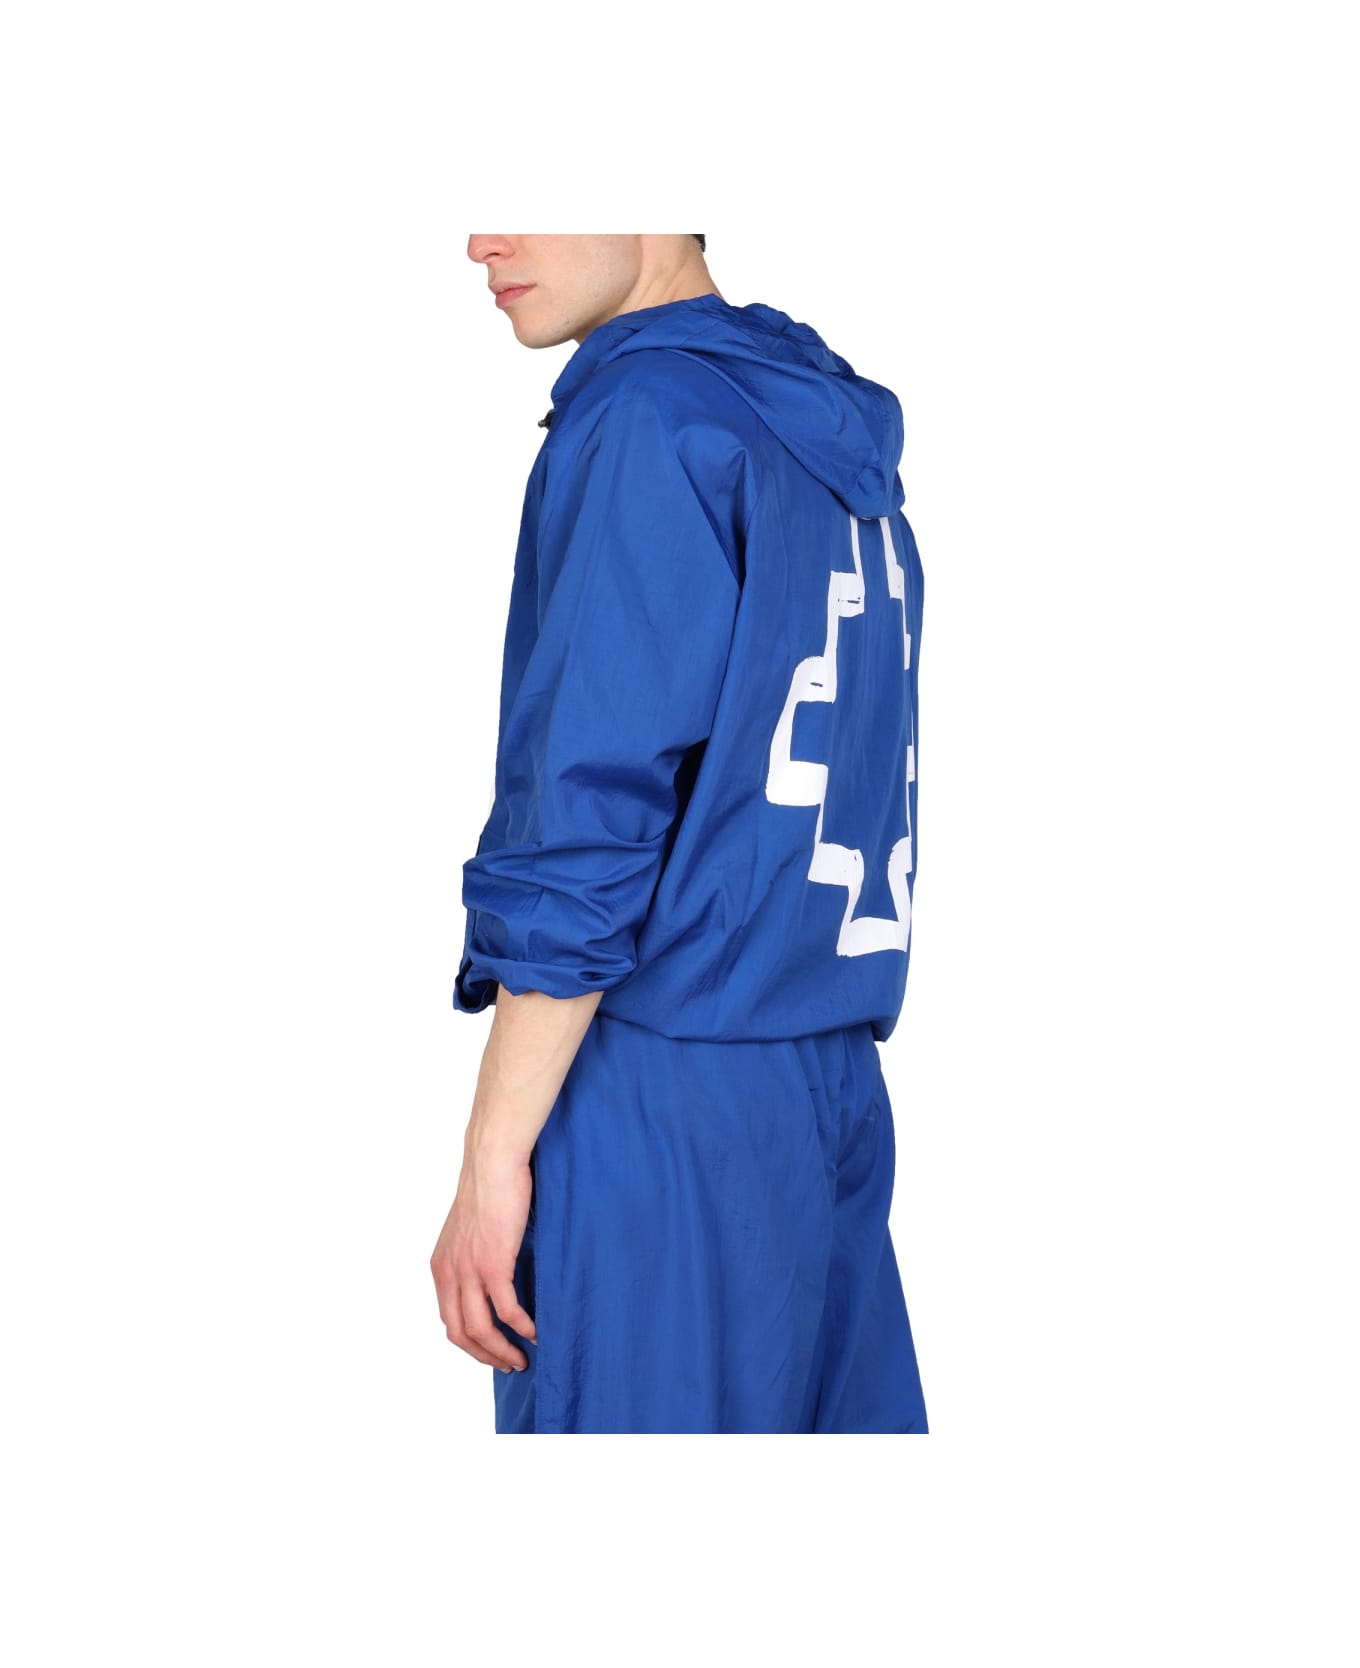 Marcelo Burlon Cross Print Windbreaker Jacket - BLUE